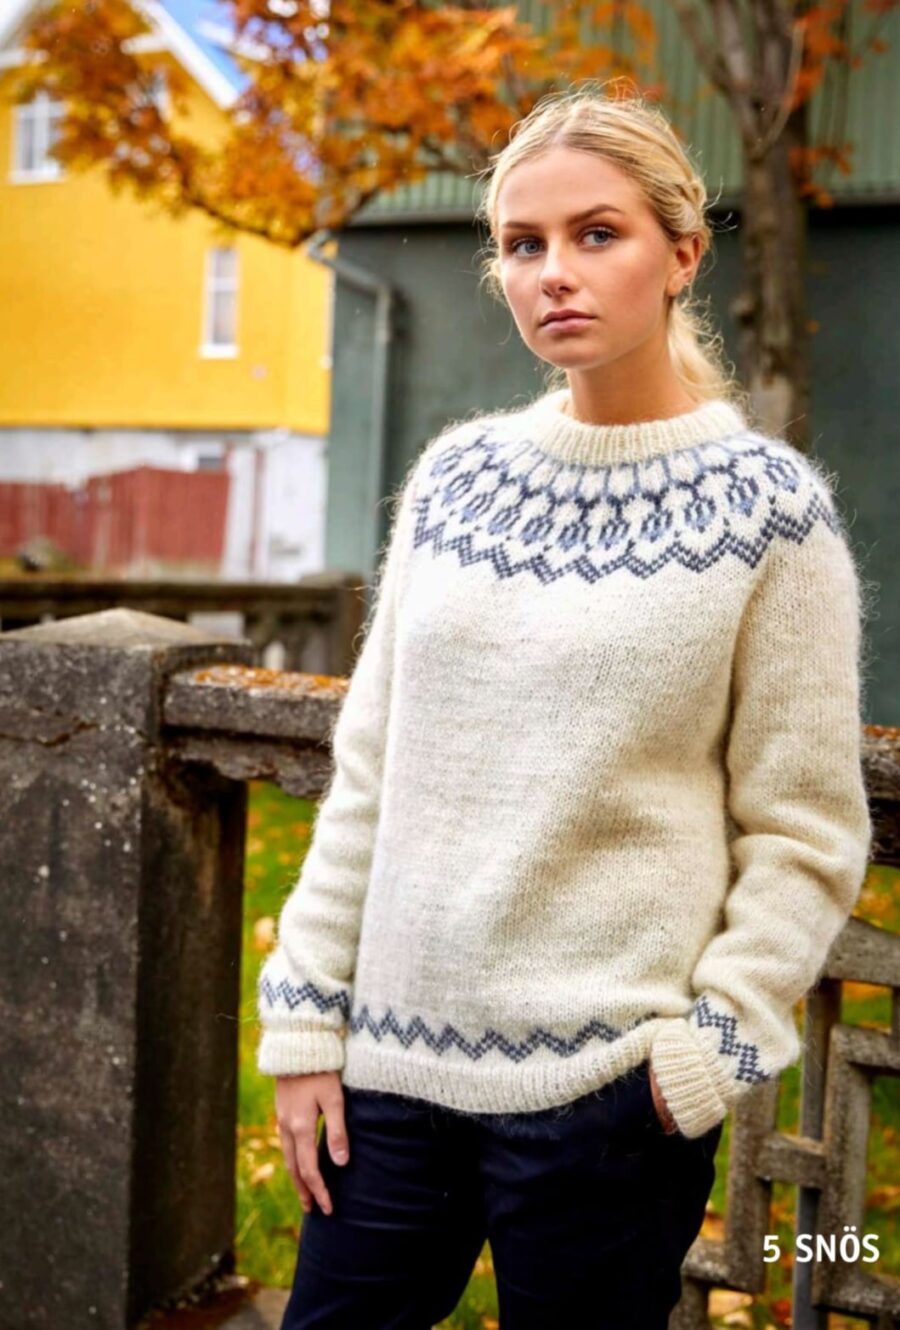 37-5 flot hvid klassisk islandsk sweater